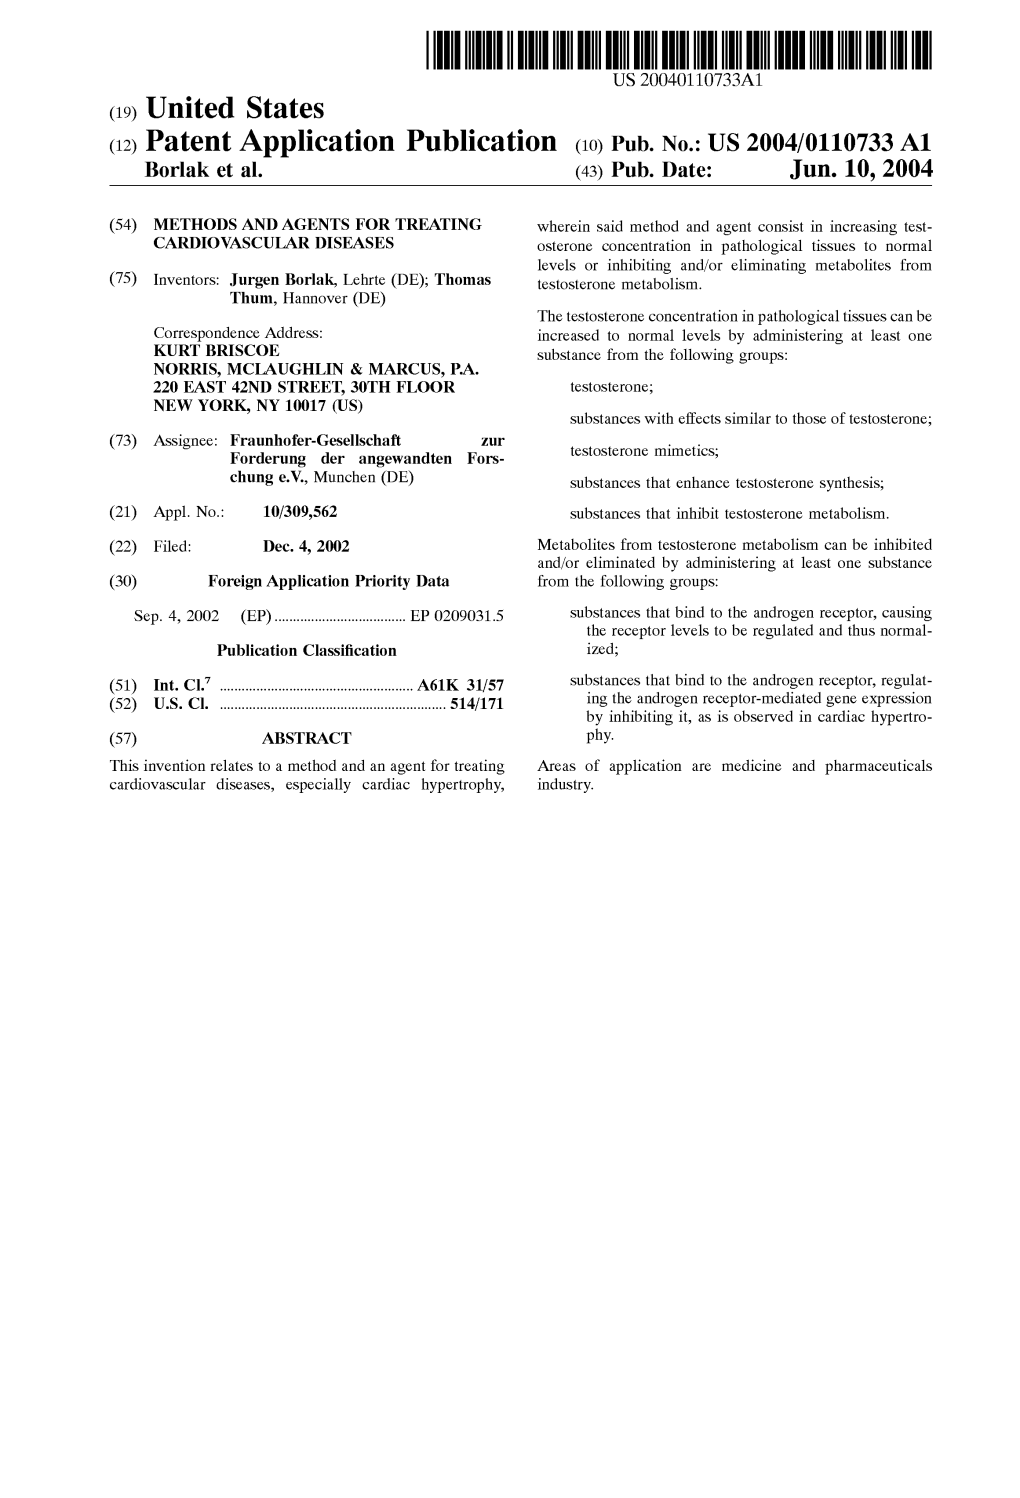 (12) Patent Application Publication (10) Pub. No.: US 2004/0110733 A1 Borlak Et Al